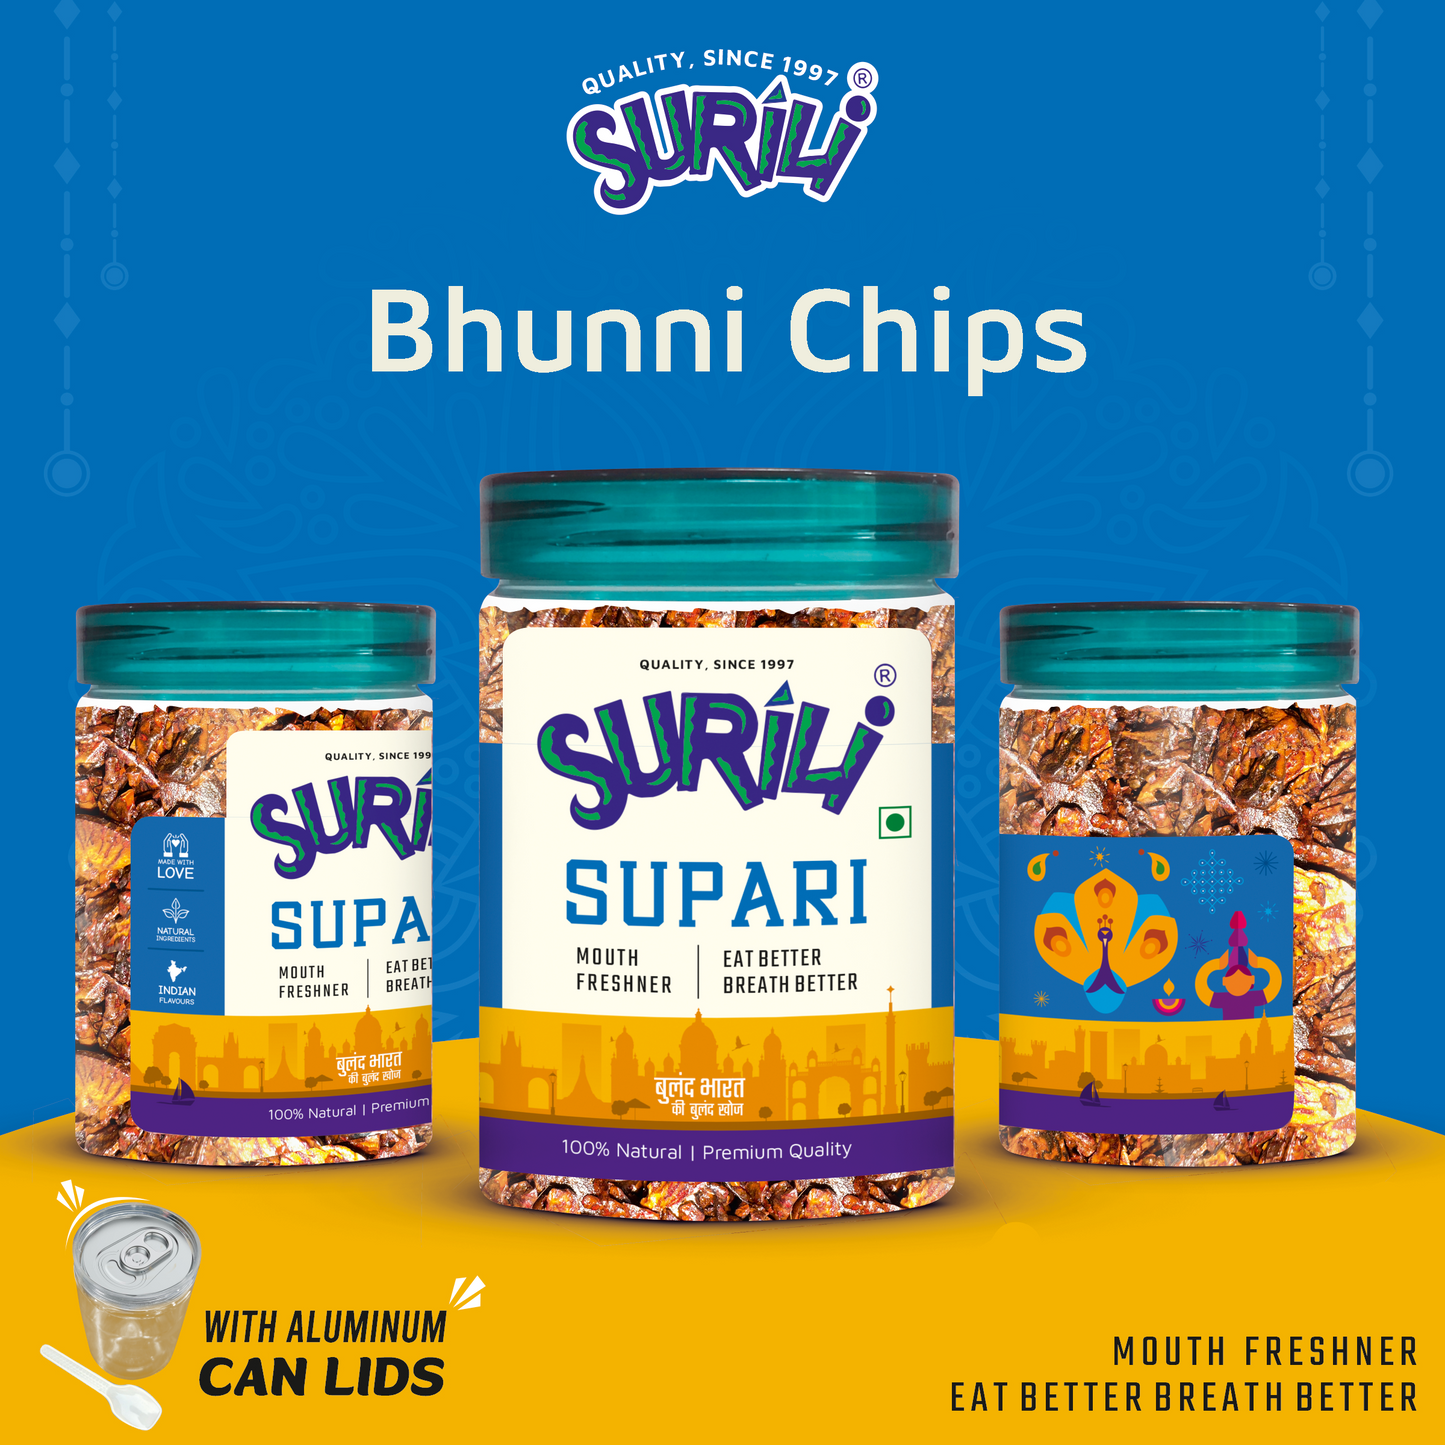 Bhunni Chips